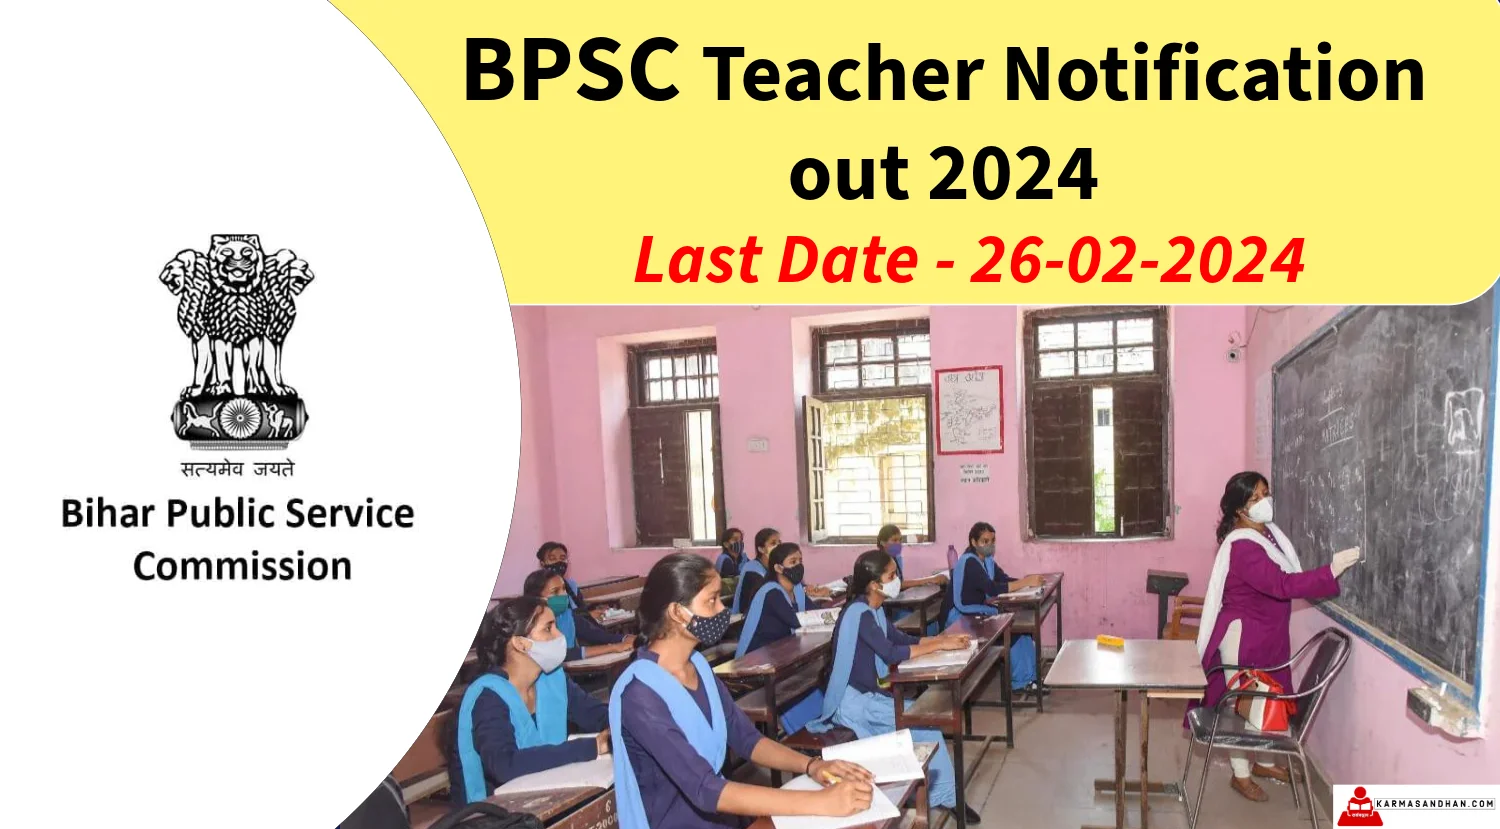 BPSC TRE 3.0 Notification Out 2024 for Bihar School Teacher